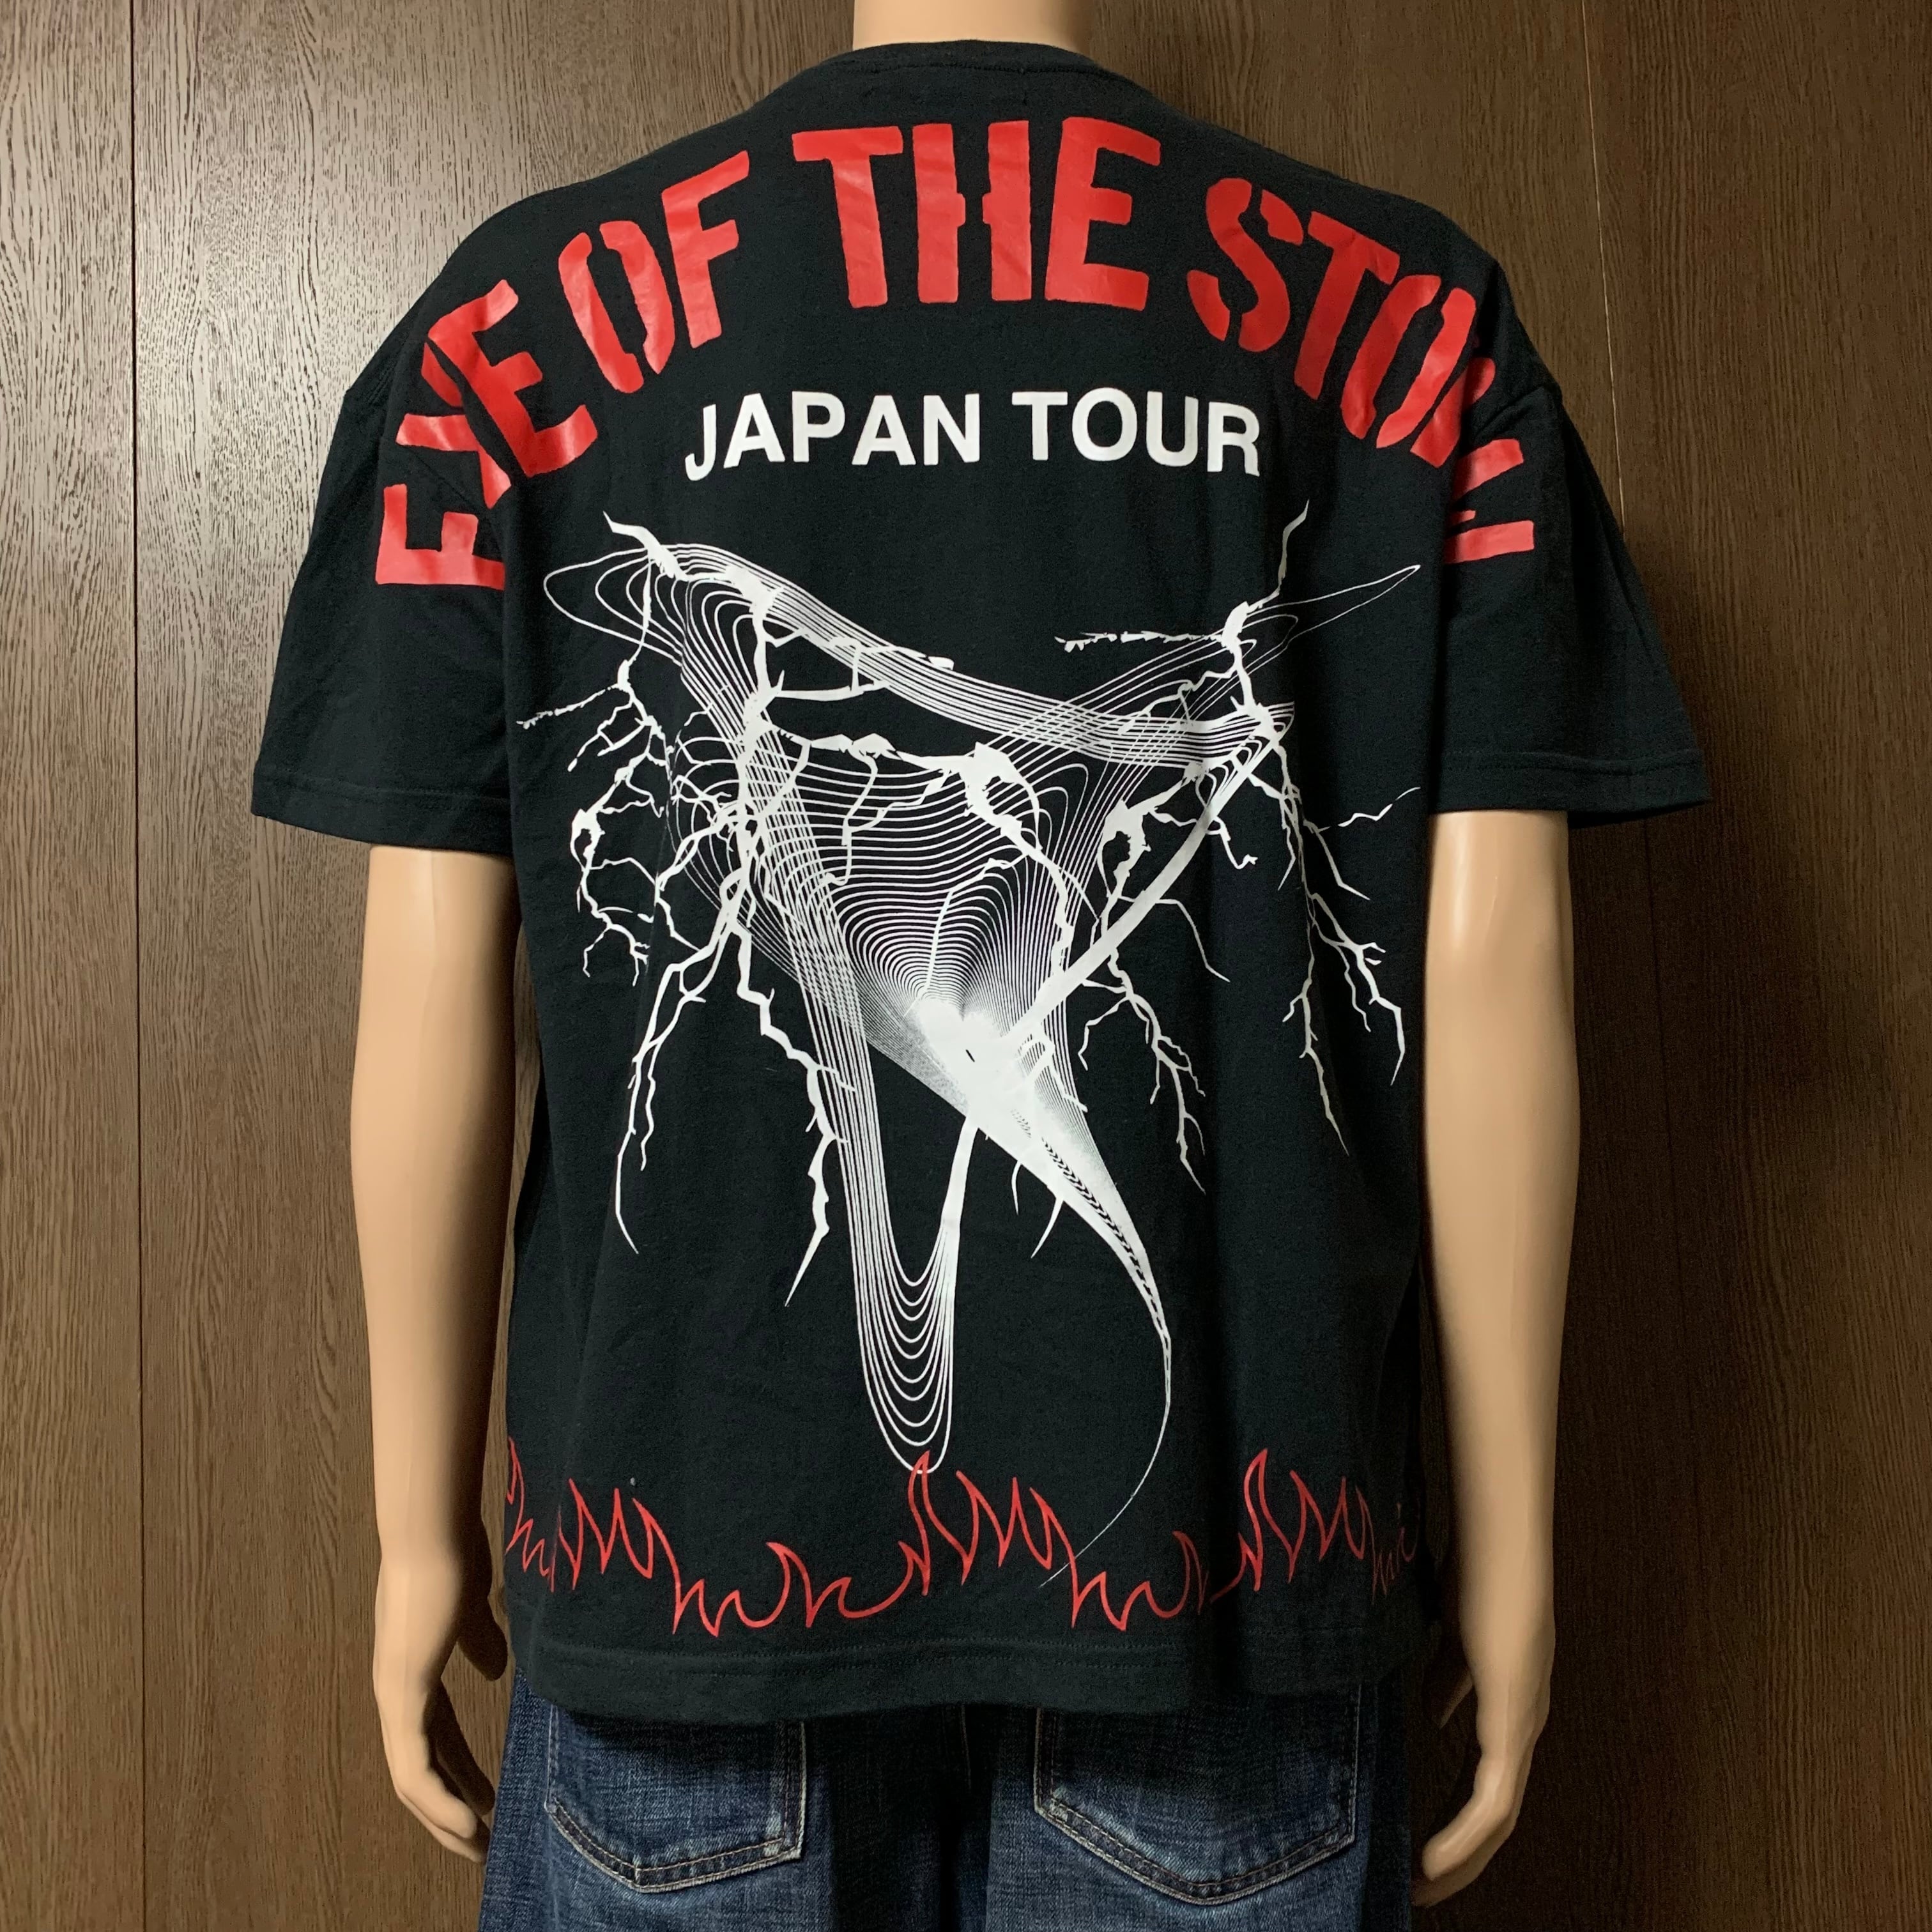 【古着】ONE OK ROCK オーバーサイズ バンドTシャツ EYE OF THE STORM